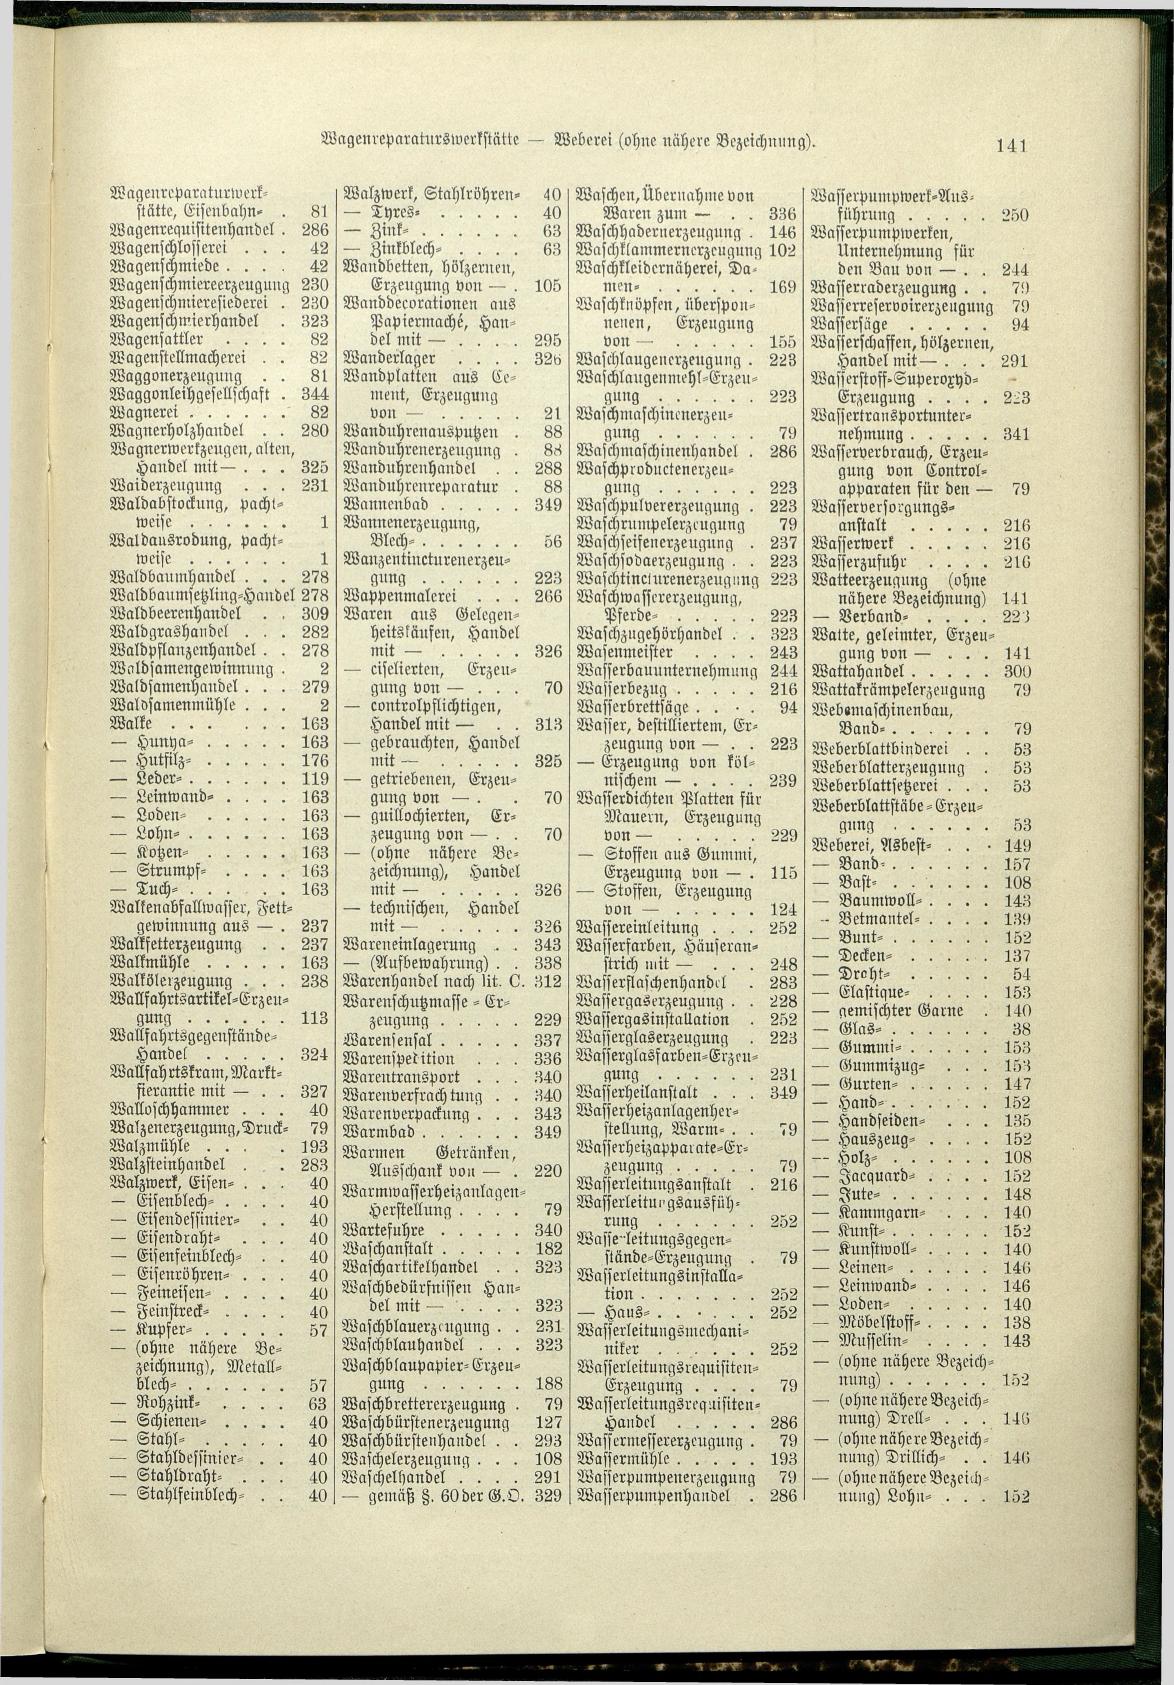 Verzeichnis der Gewerbe der im Reichsrathe vertretenen Königreiche und Länder 1900 - Page 145